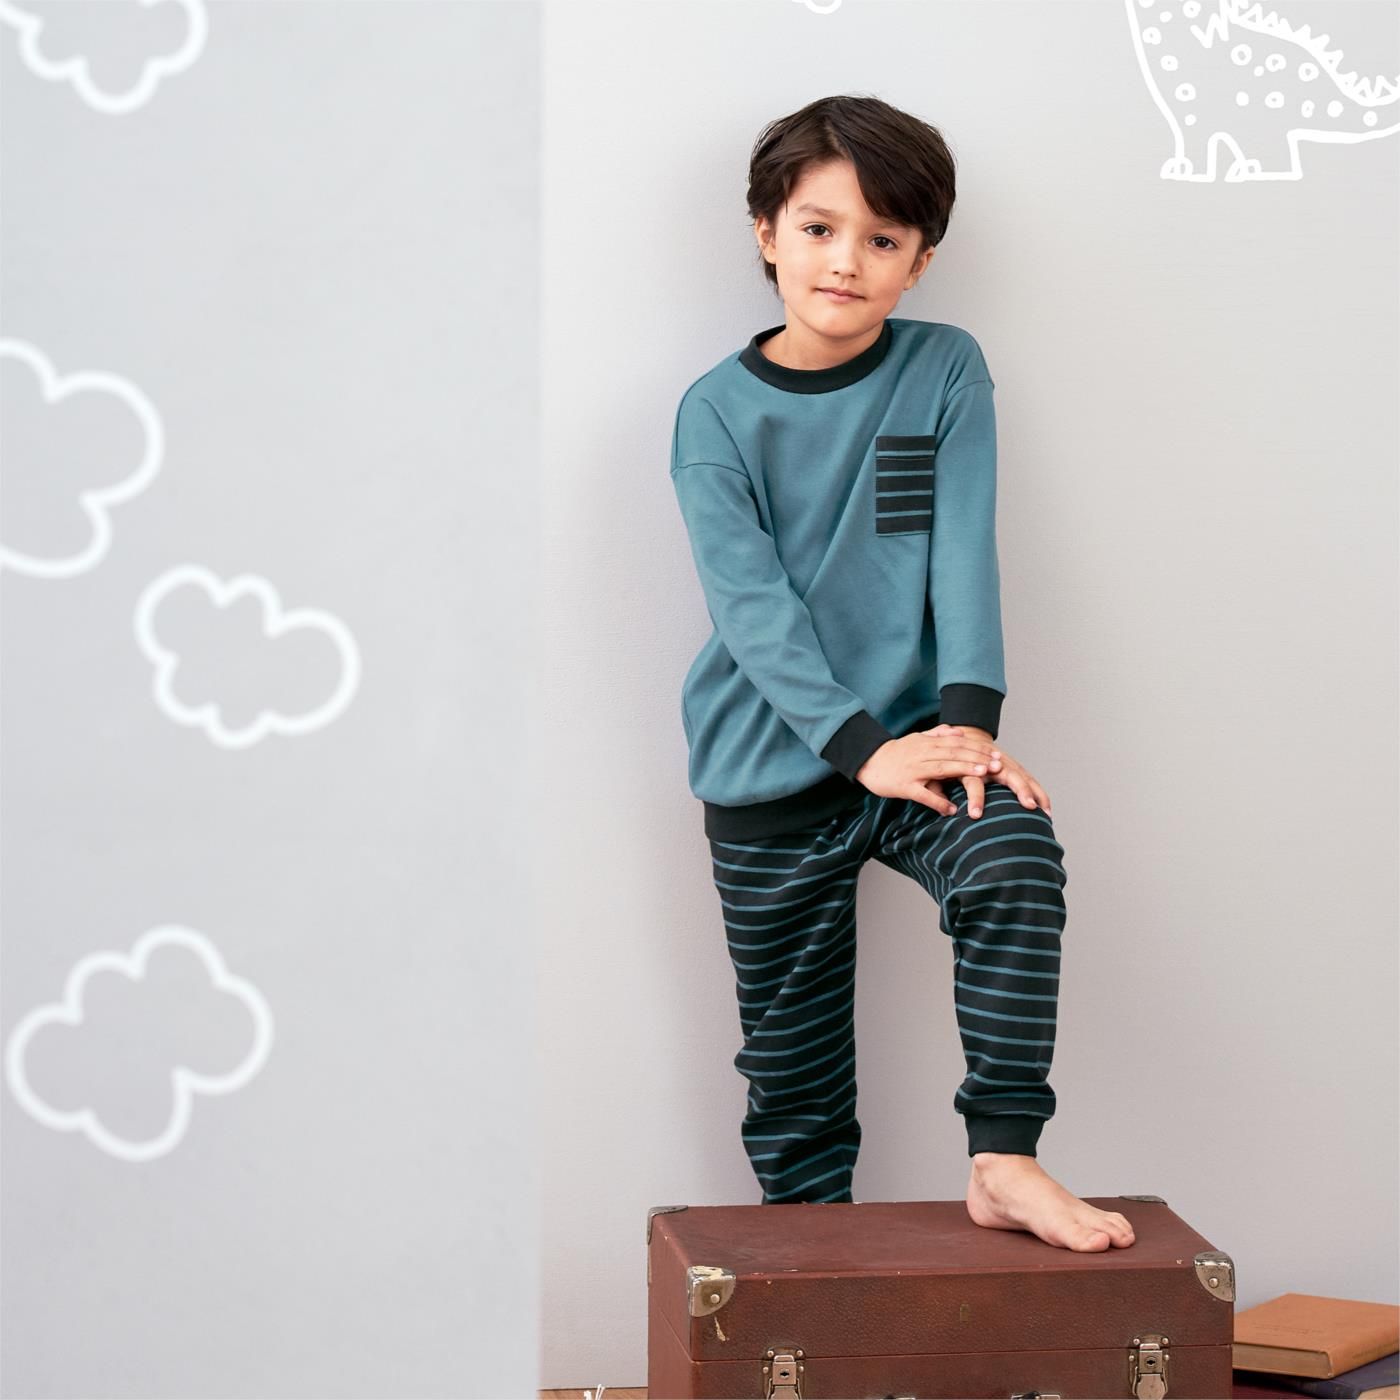 Pijama largo para niños 100% algodón orgánico, moda ecológica vegana